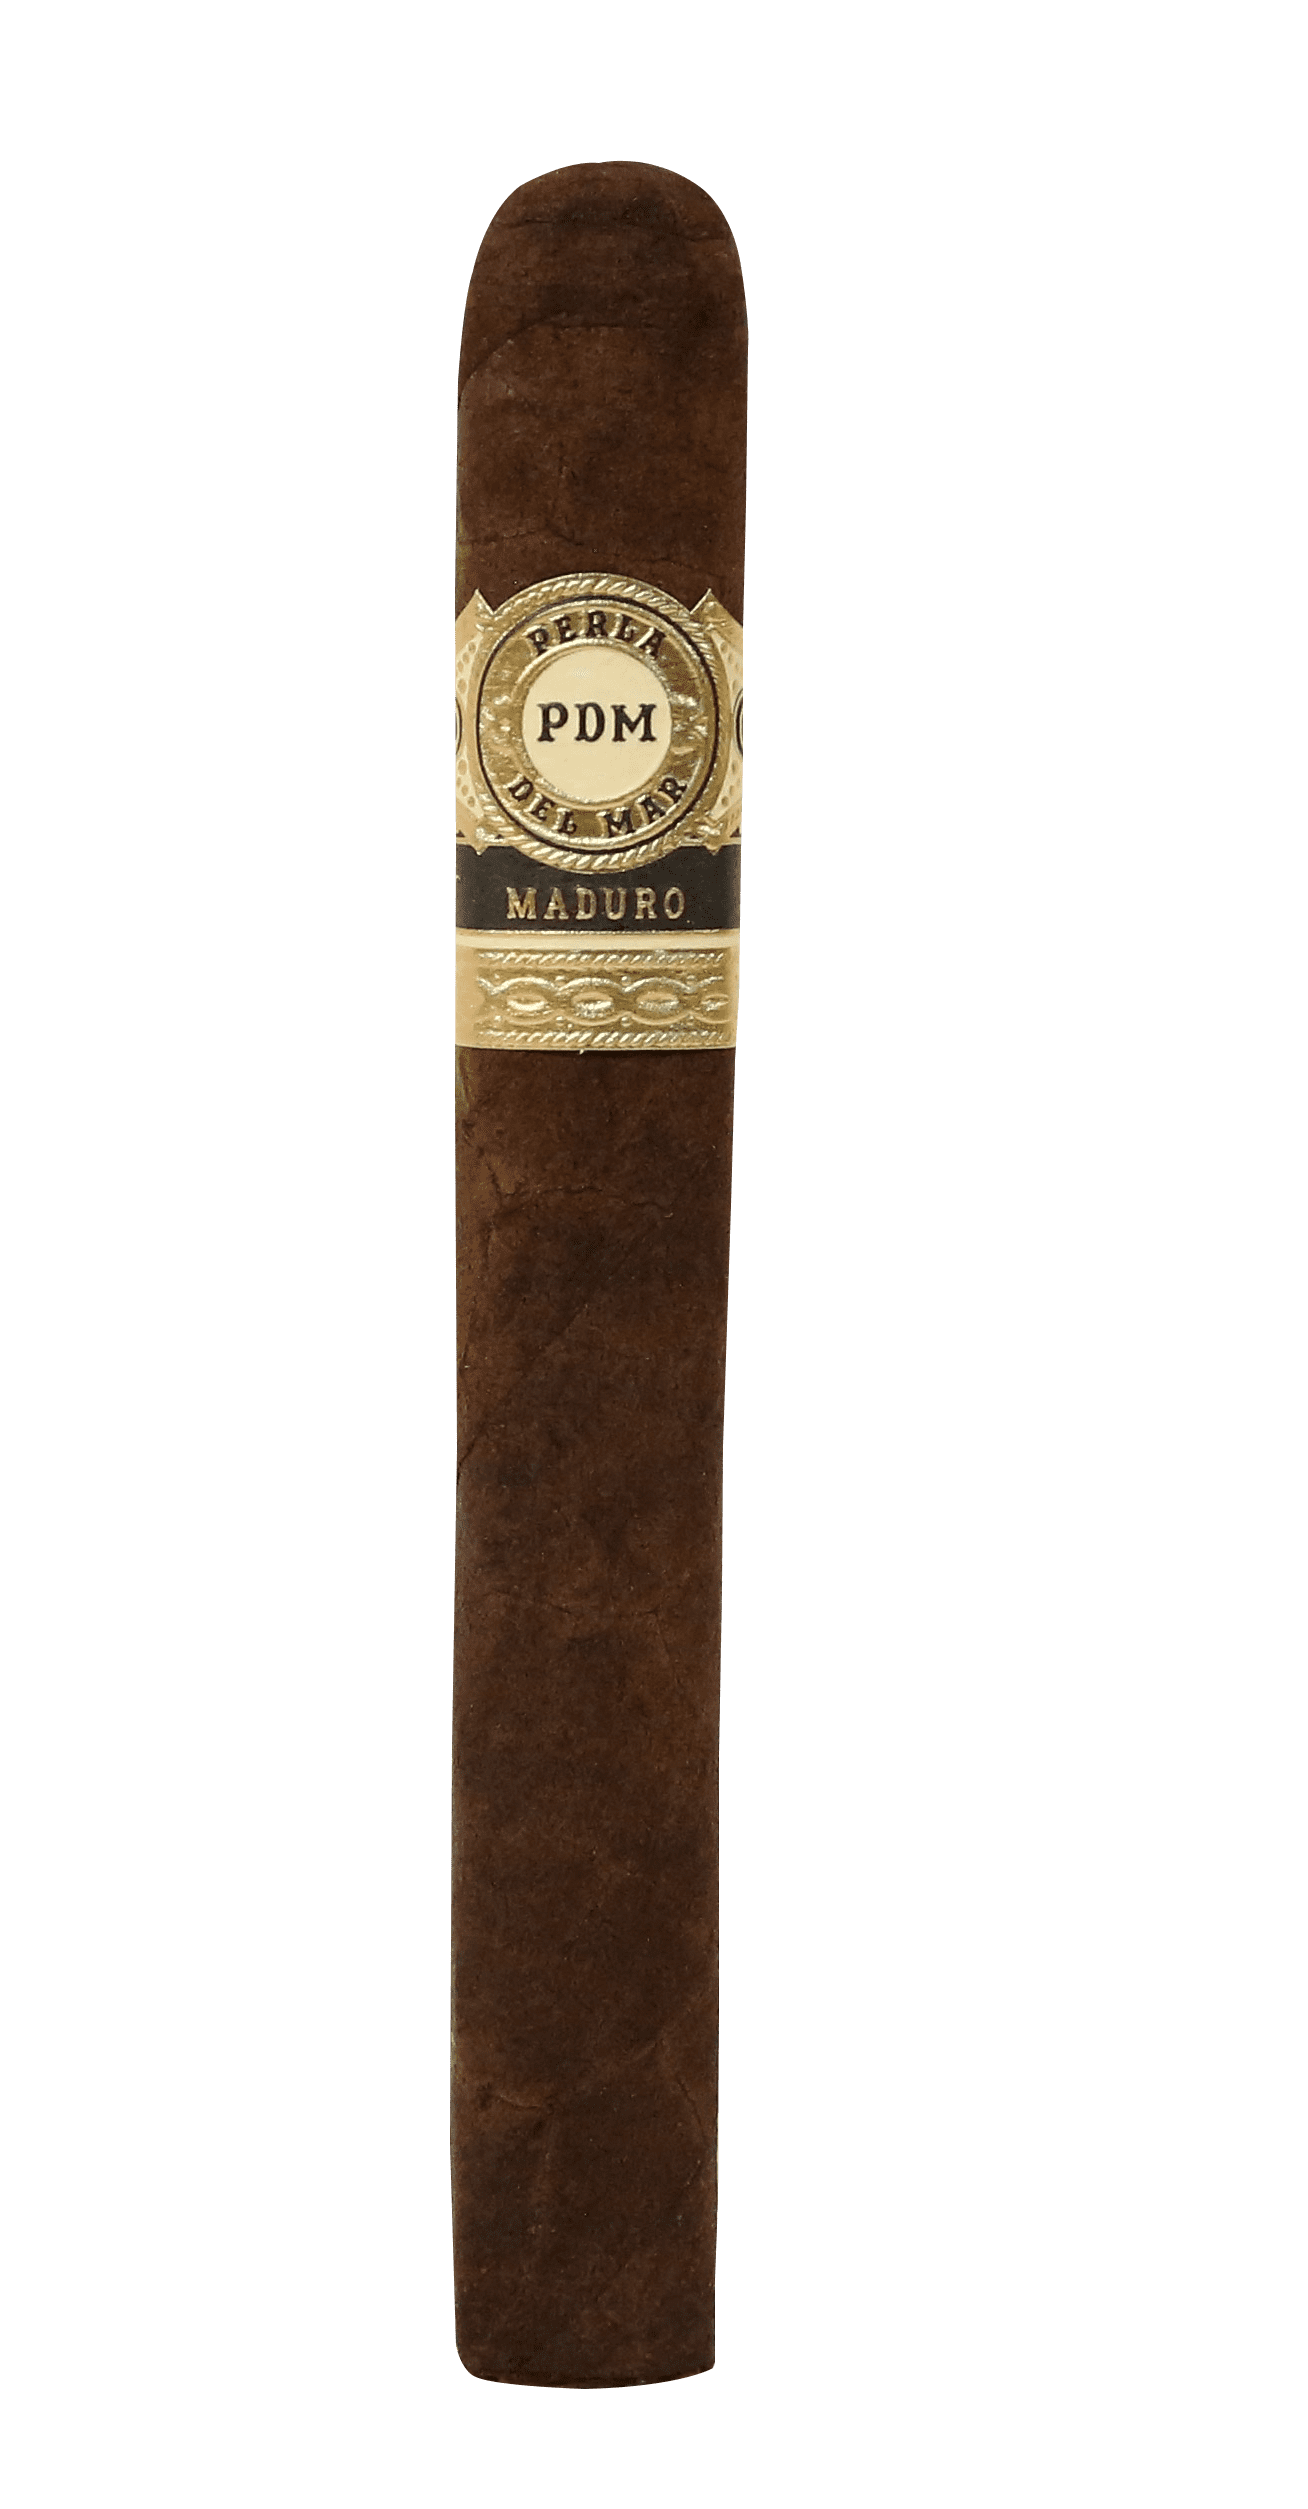 Single Perla Del Mar Maduro Corona Gorda cigar